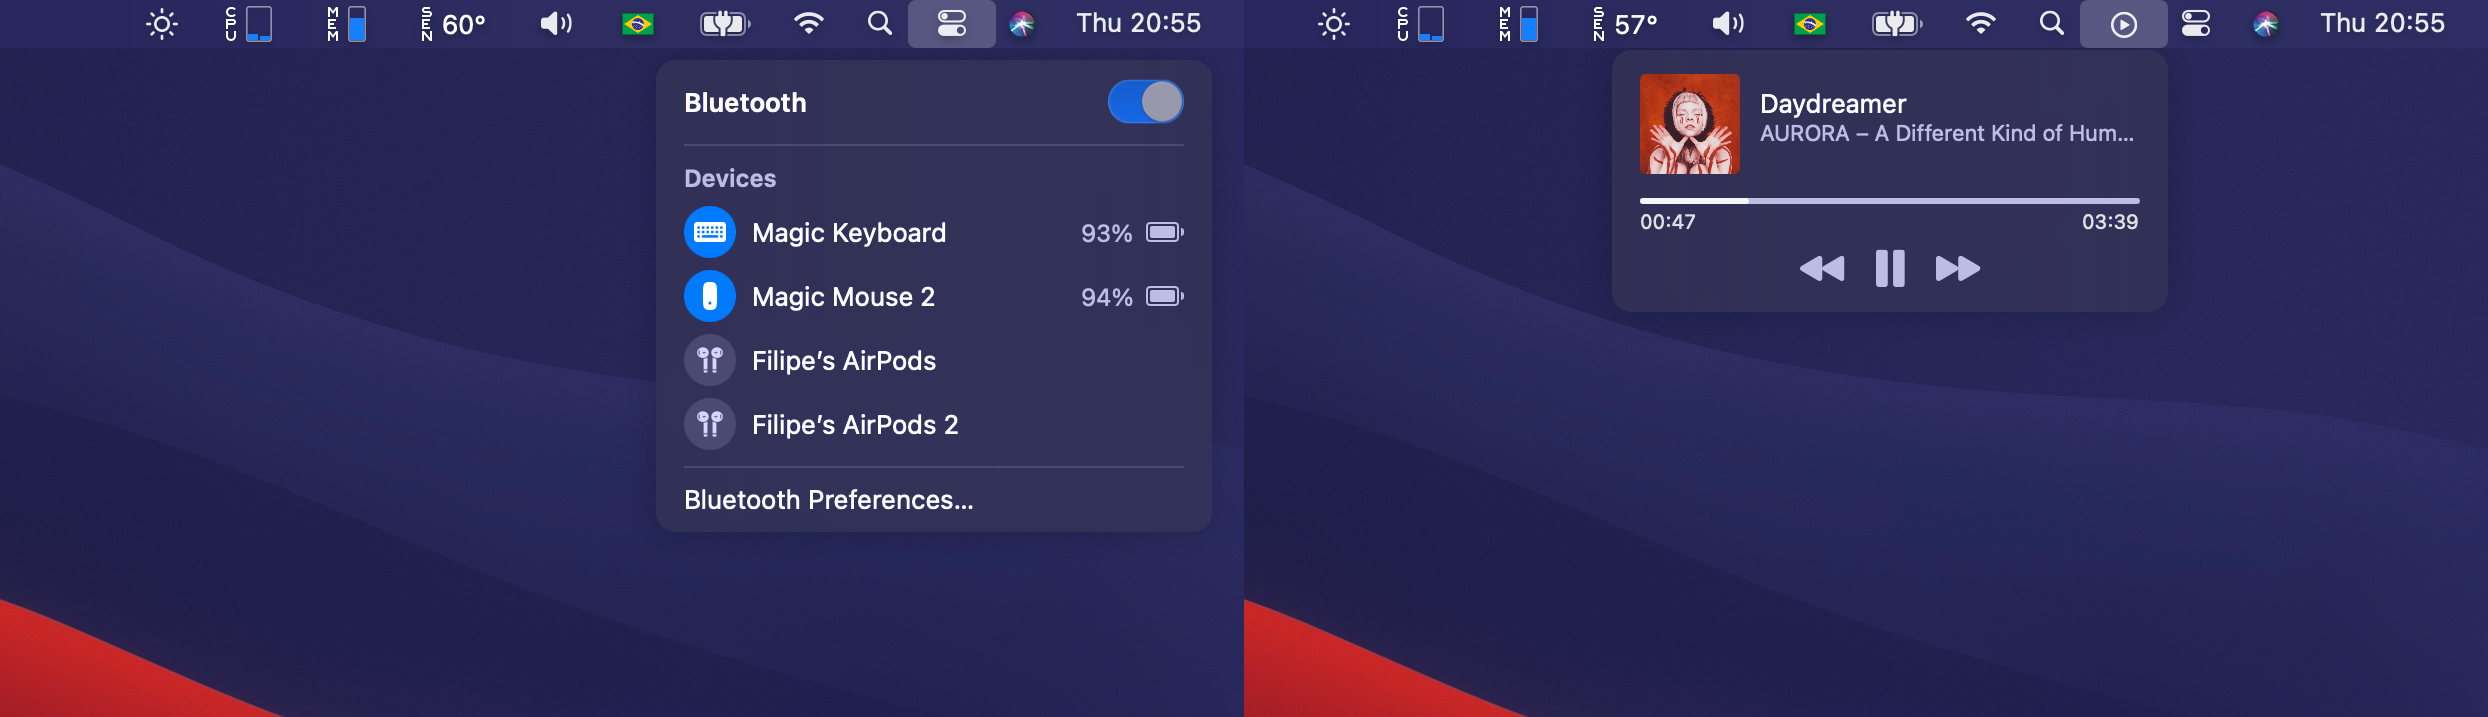 menu bar skype for mac